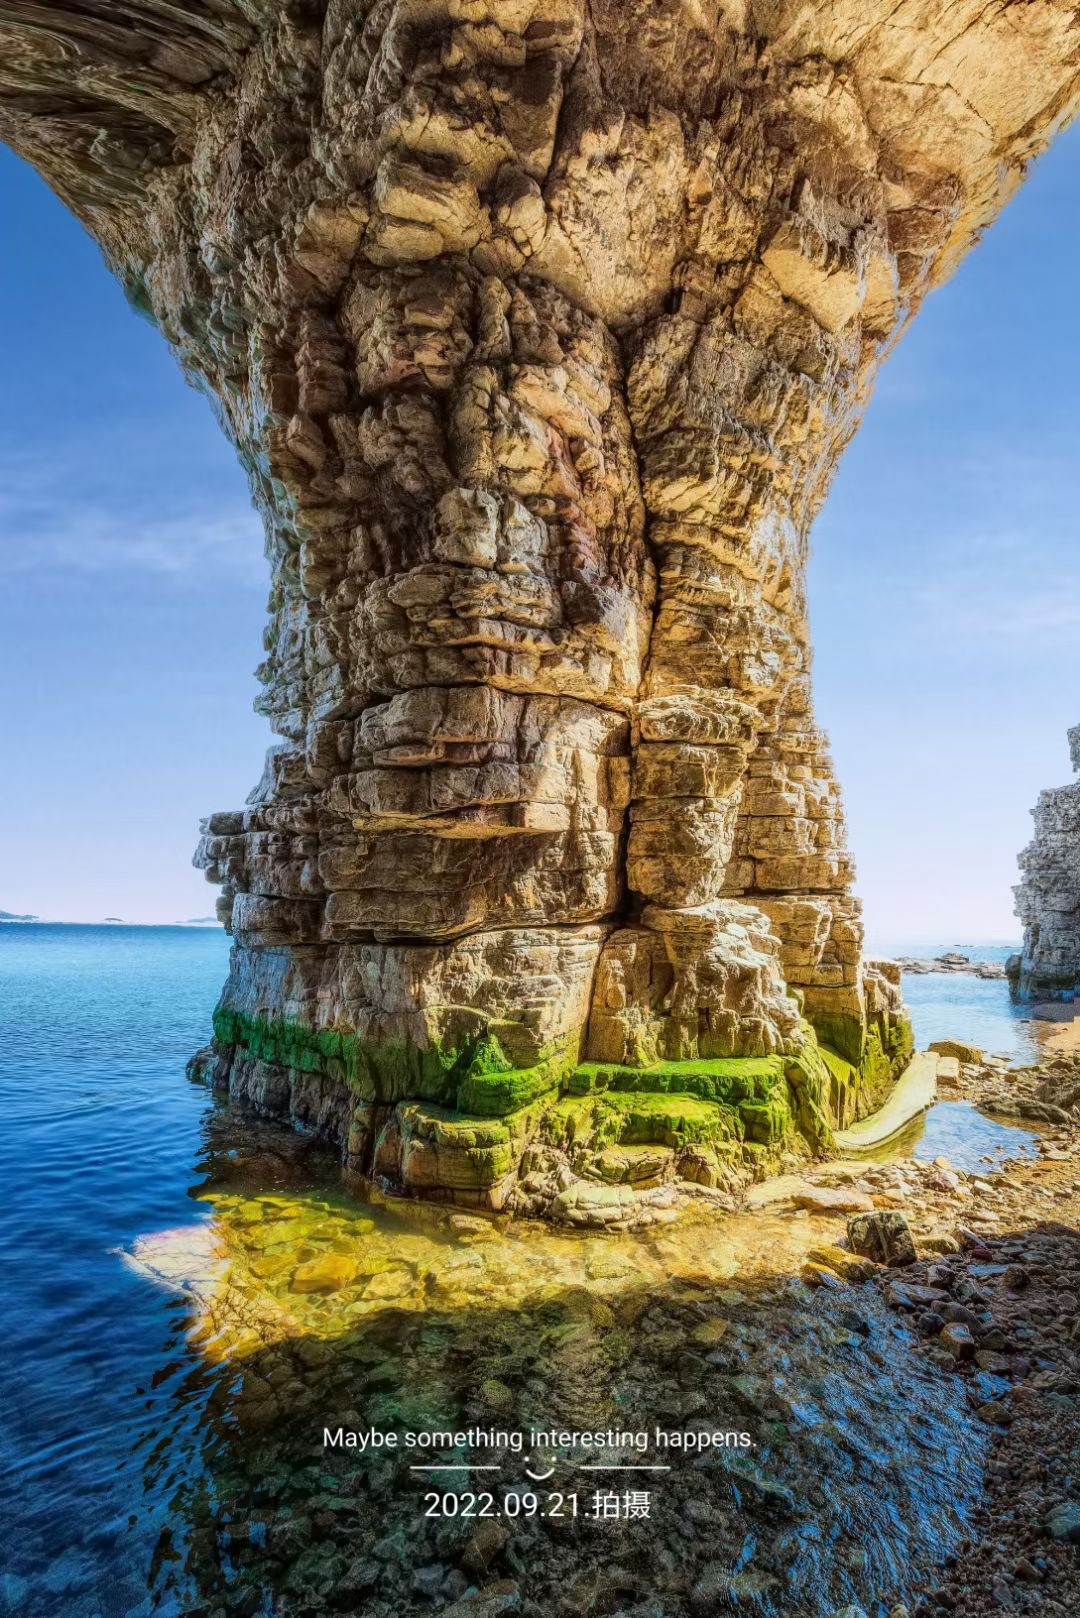 海蚀洞一般都形成于海崖上的岩石裂缝，因受海浪几百年甚至几千年的不断冲击，岩石不断碎落形成了空洞，在山